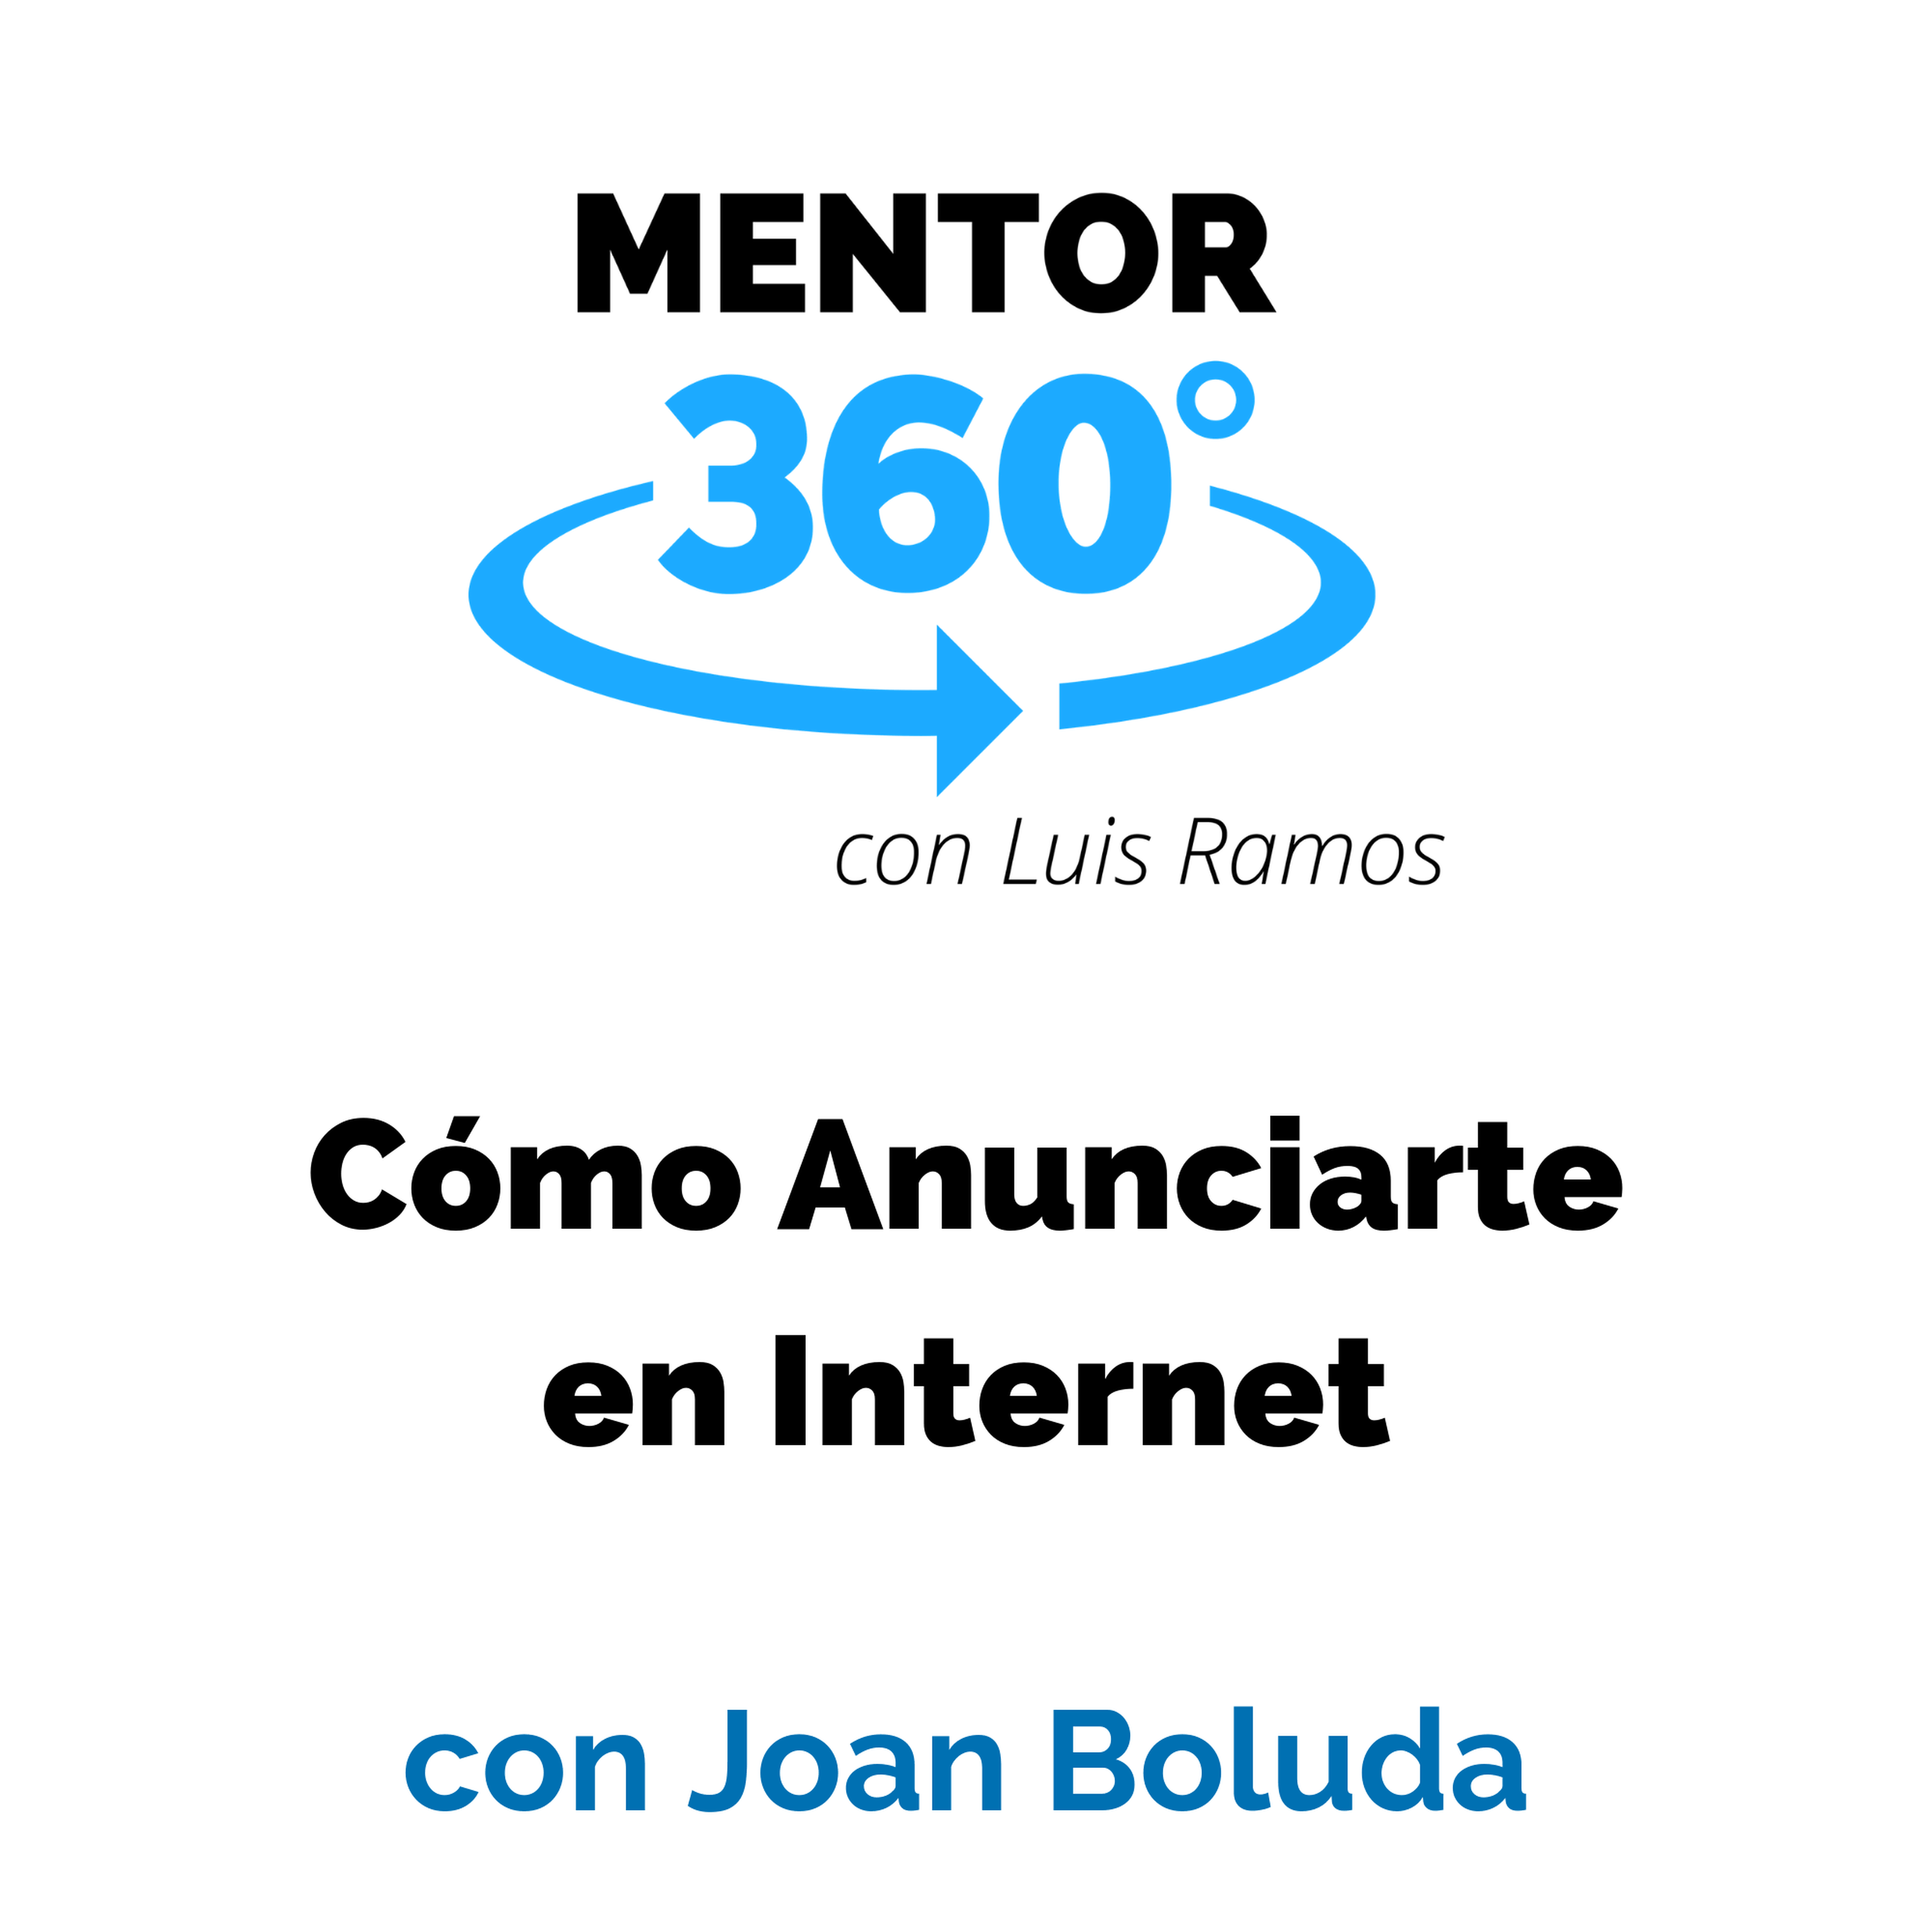 Cómo Anunciarte en Internet, con Joan Boluda - MARKETING - MENTOR360